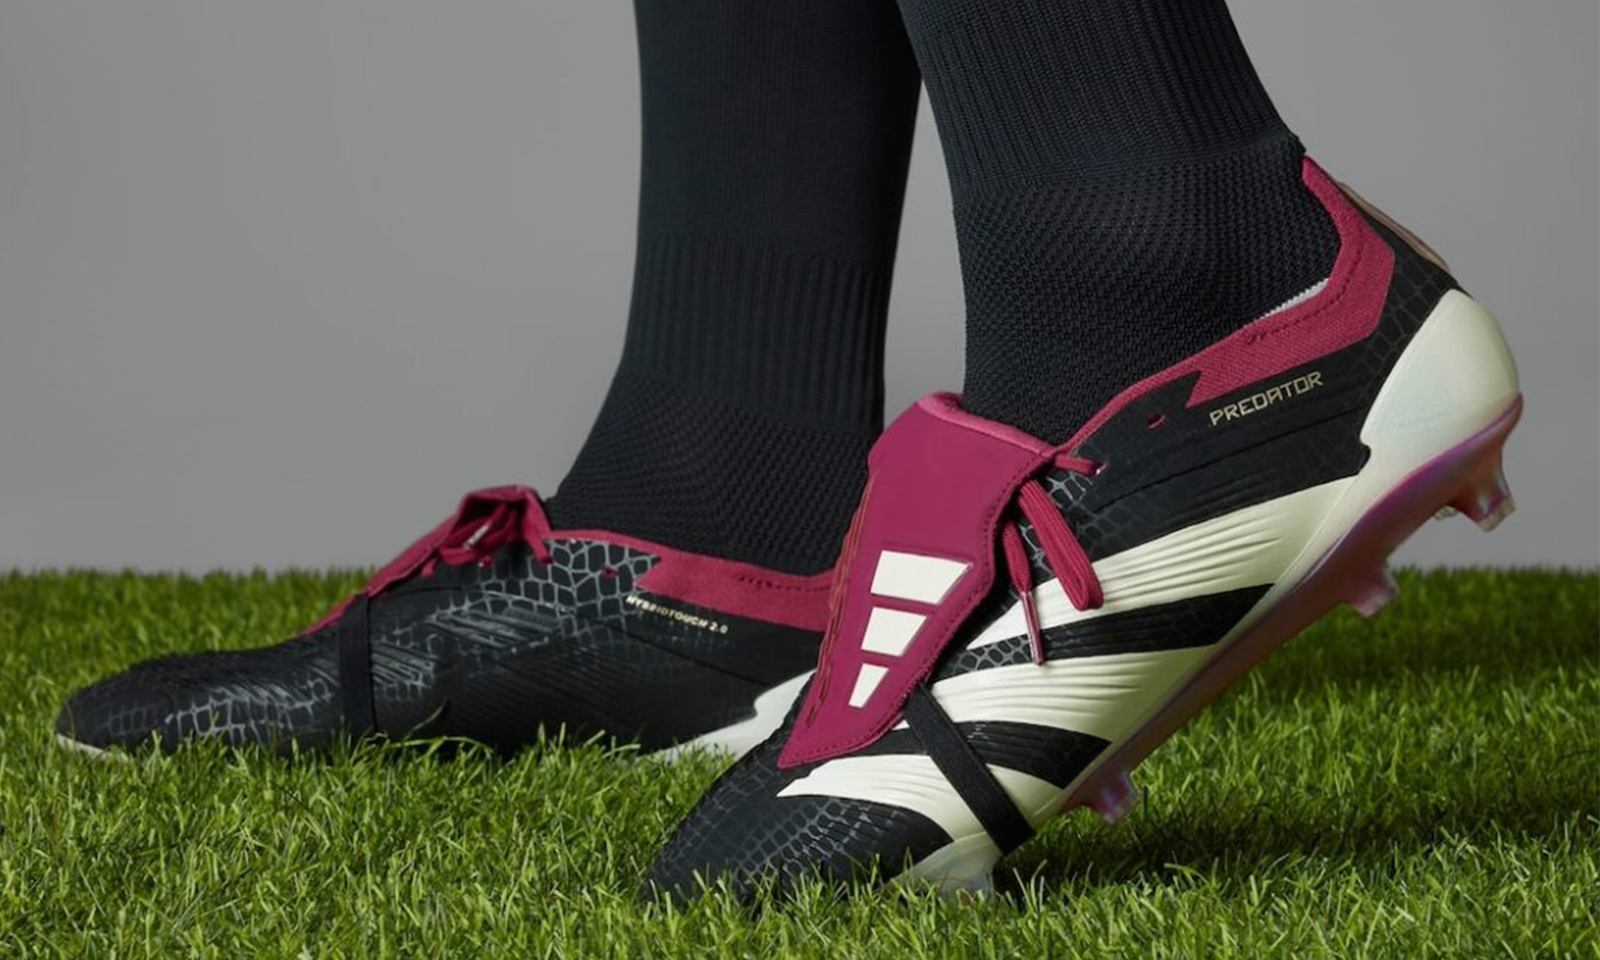 adidas 推出限量版 Predator Elite FT 足球鞋